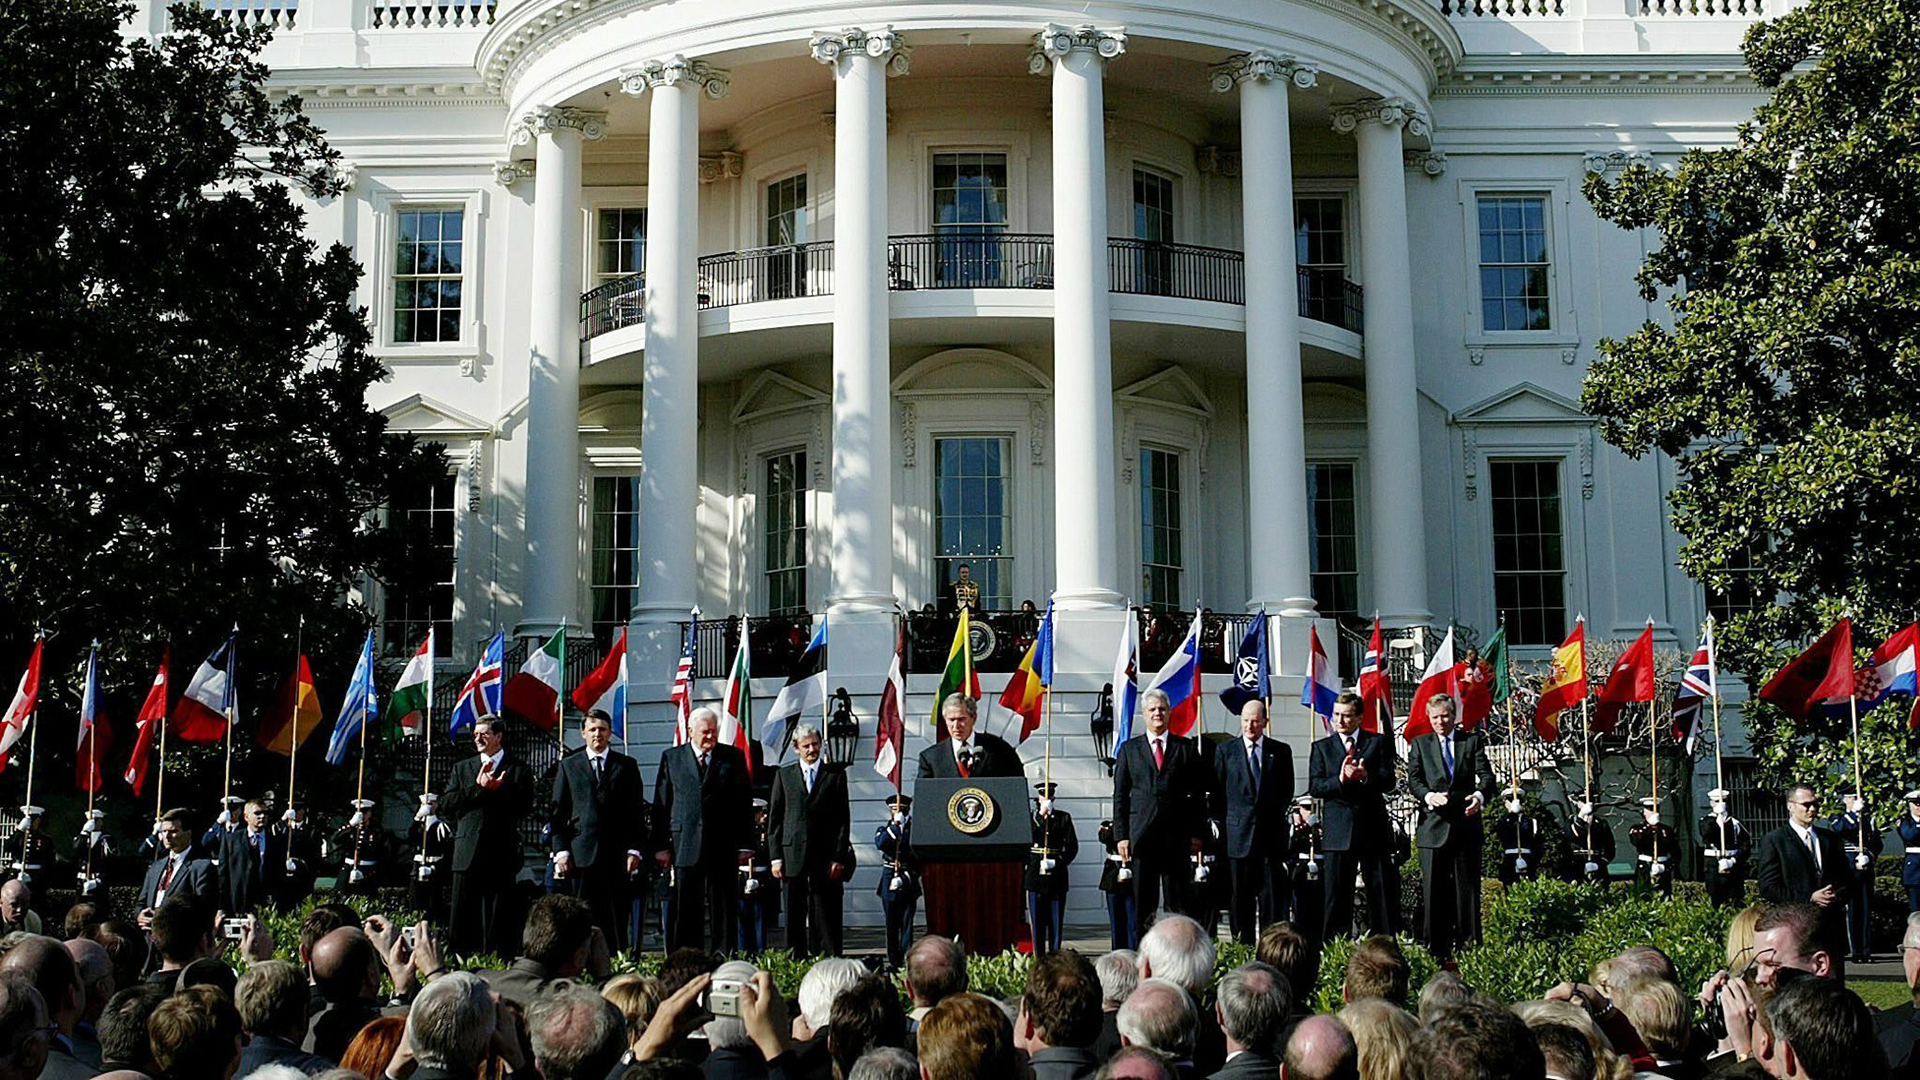 Feierlichkeiten zur Aufnahme der Slowakei und anderer Staaten in die NATO vor dem Weißen Haus am 29. März 2004. | picture-alliance / dpa/dpaweb